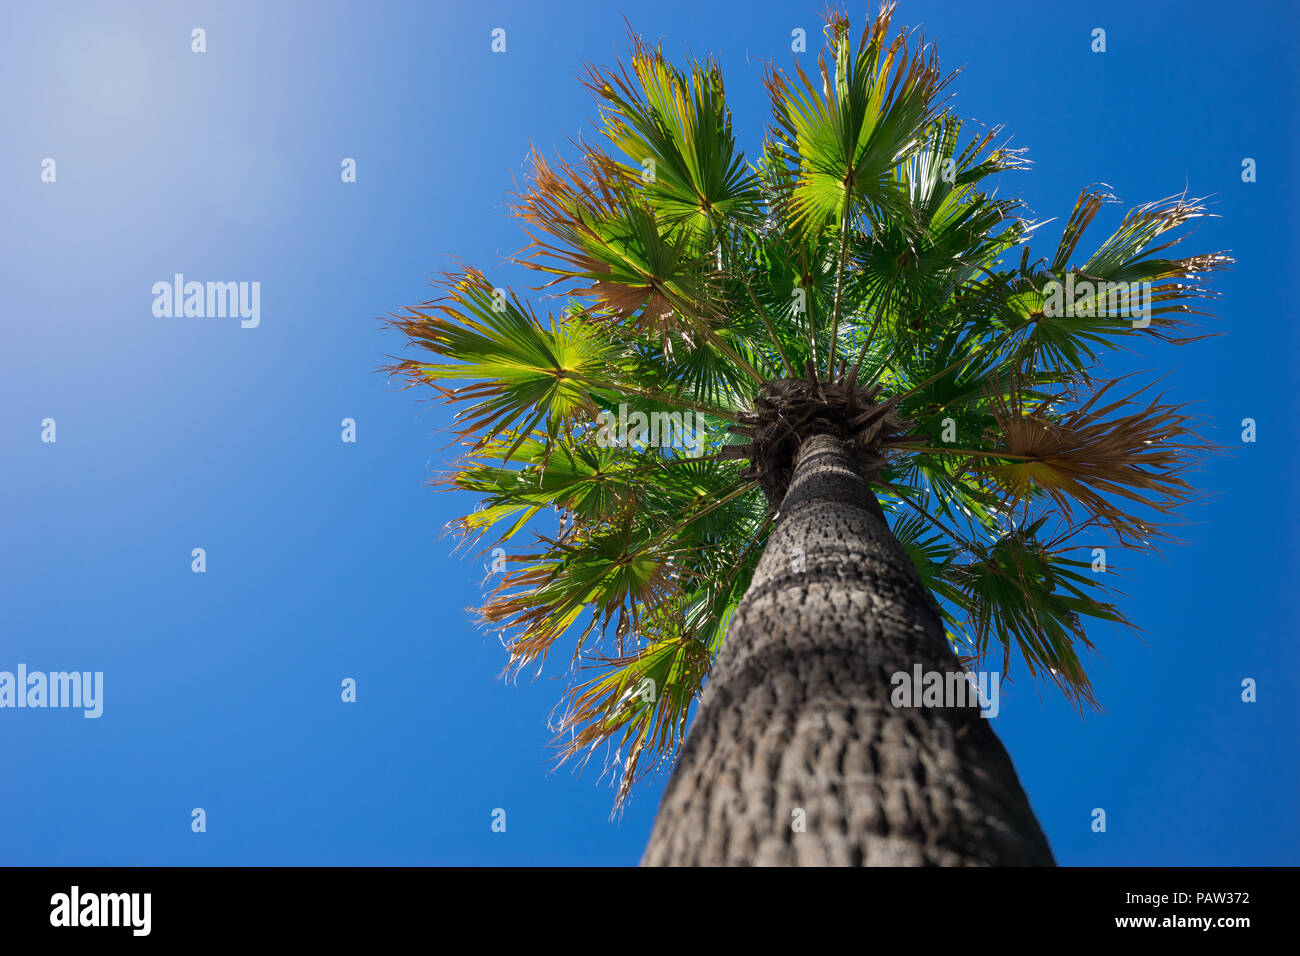 Palmen am blauen Himmel Hintergrund, Blick von Boden, Idee für tropische Sommer, Reisen Stockfoto